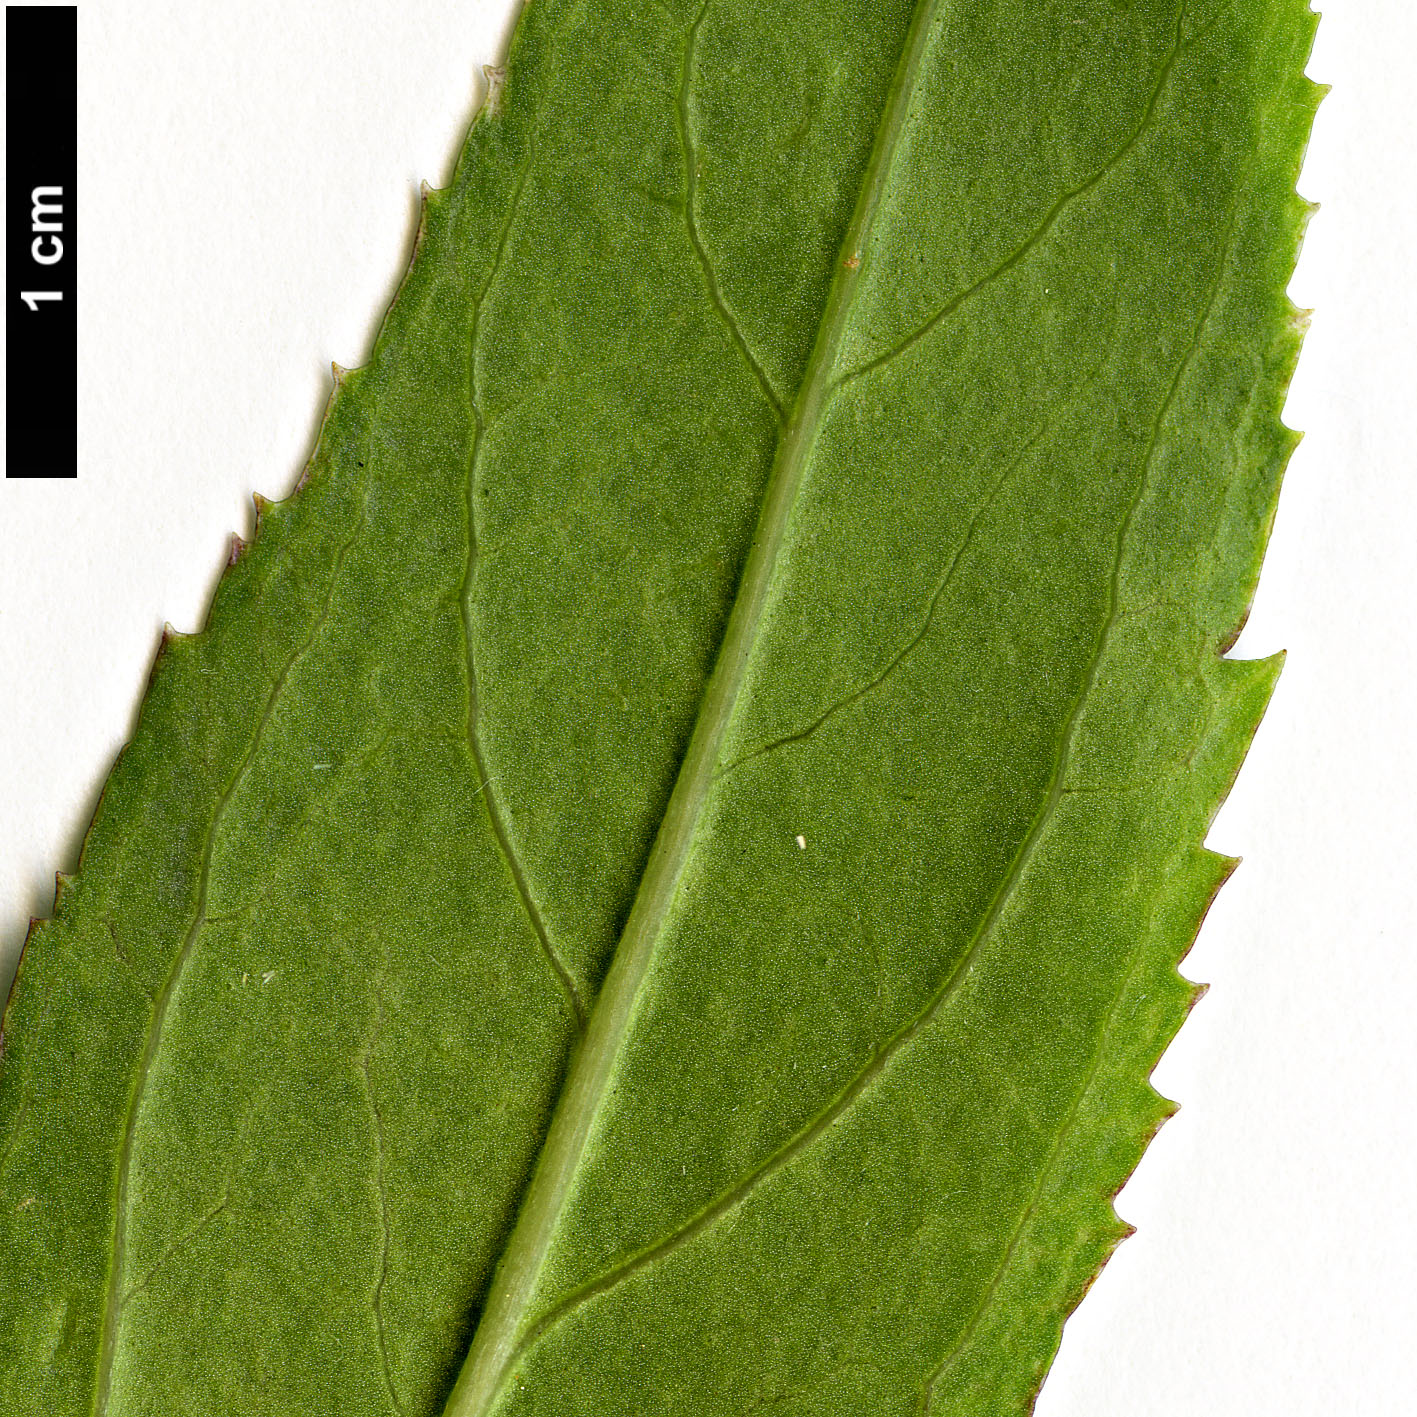 High resolution image: Family: Oleaceae - Genus: Forsythia - Taxon: viridissima - SpeciesSub: var. koreana